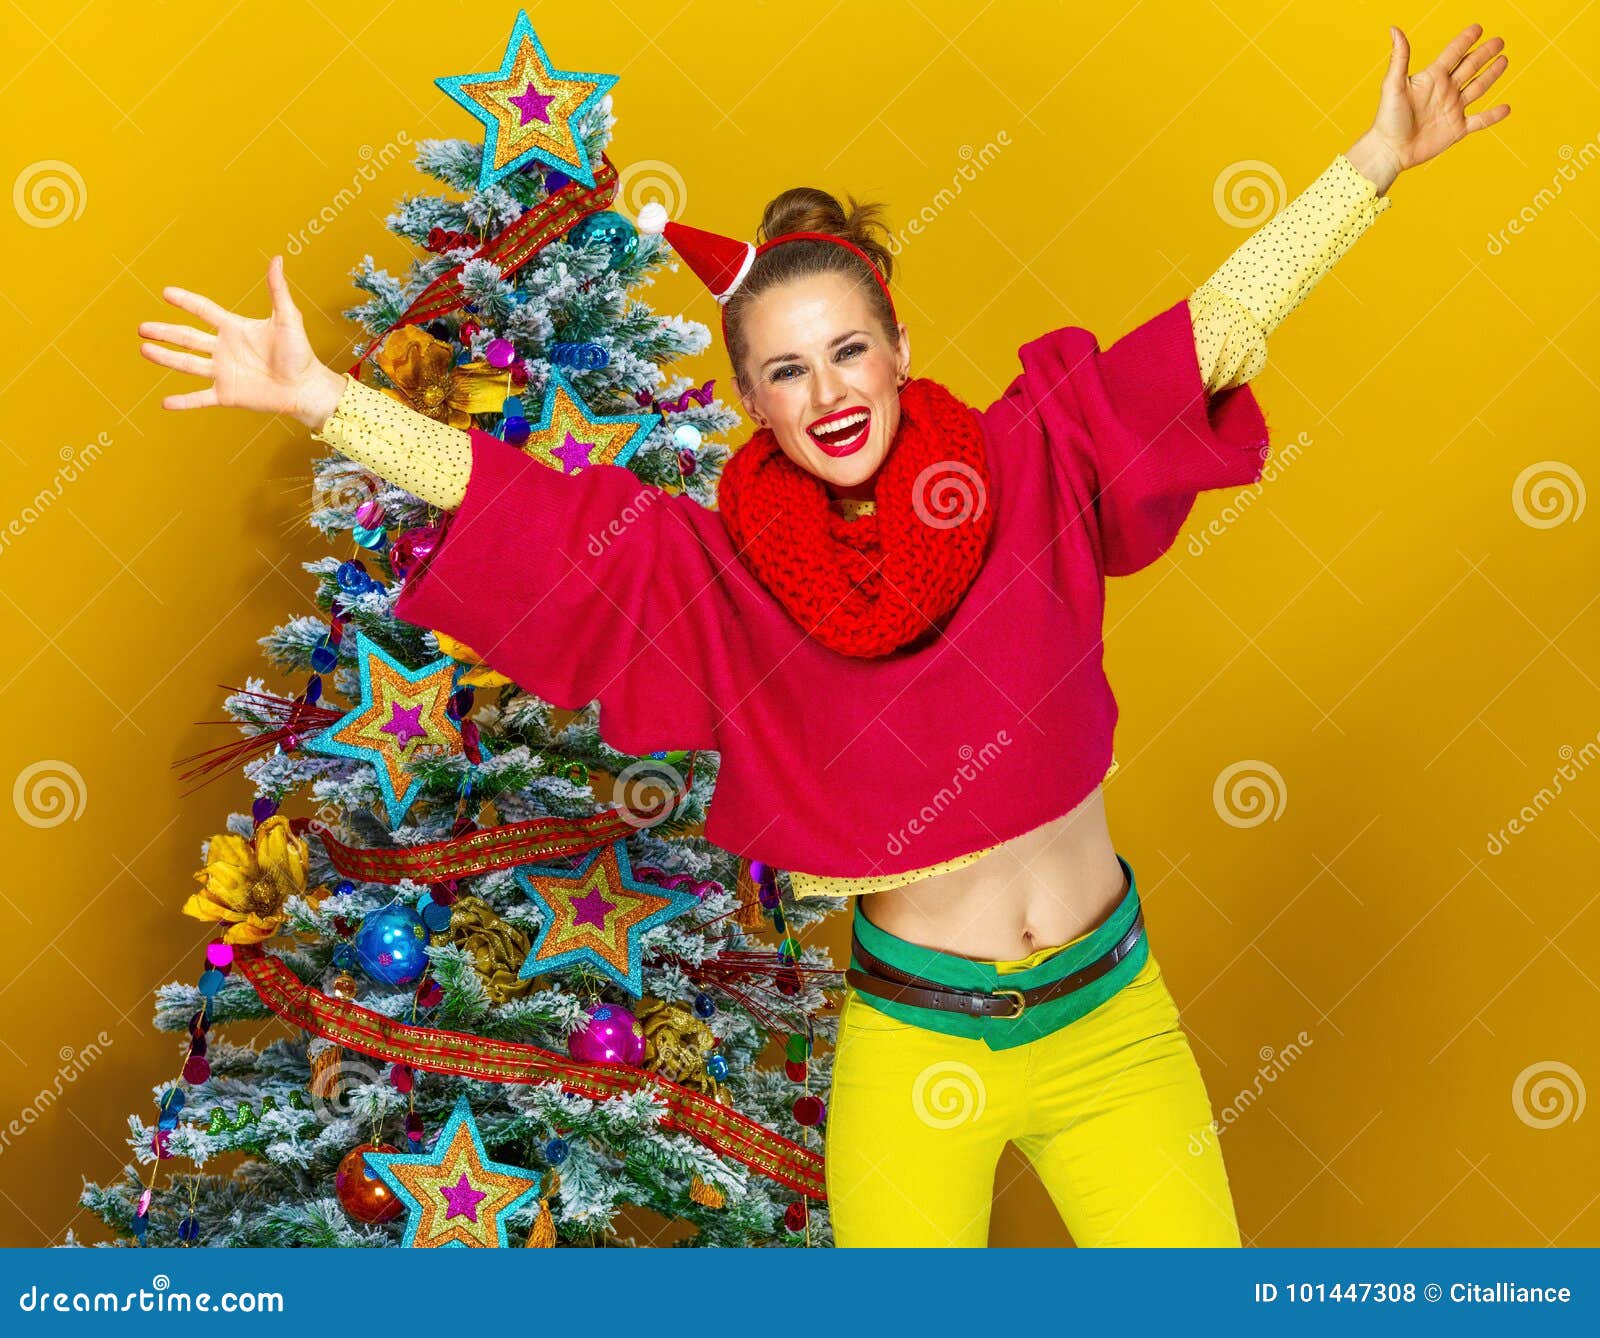 Ευτυχής γυναίκα κοντά στο χριστουγεννιάτικο δέντρο κίτρινο να χαρεί υποβάθρου. εορταστική εποχή ευτυχής νέα γυναίκα στα ζωηρόχρωμα ενδύματα κοντά στο χριστουγεννιάτικο δέντρο κίτρινο να χαρεί υποβάθρου